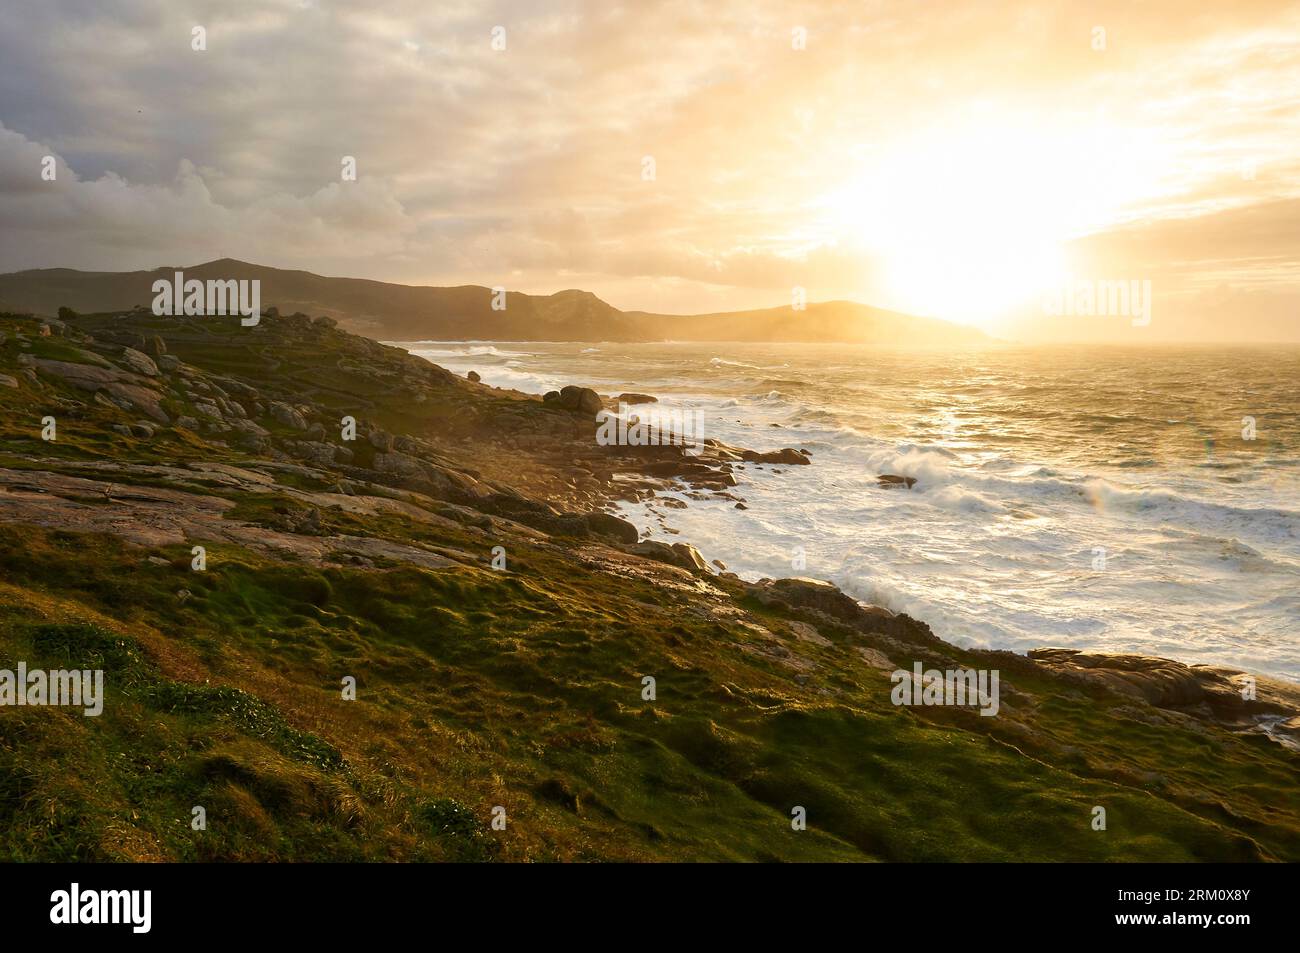 Rocky littoral of Costa da Morte coastline with rough sea at sunset (Muxía, Costa da Morte, Fisterra, A Coruña, Galicia, Atlantic Sea, Spain) Stock Photo